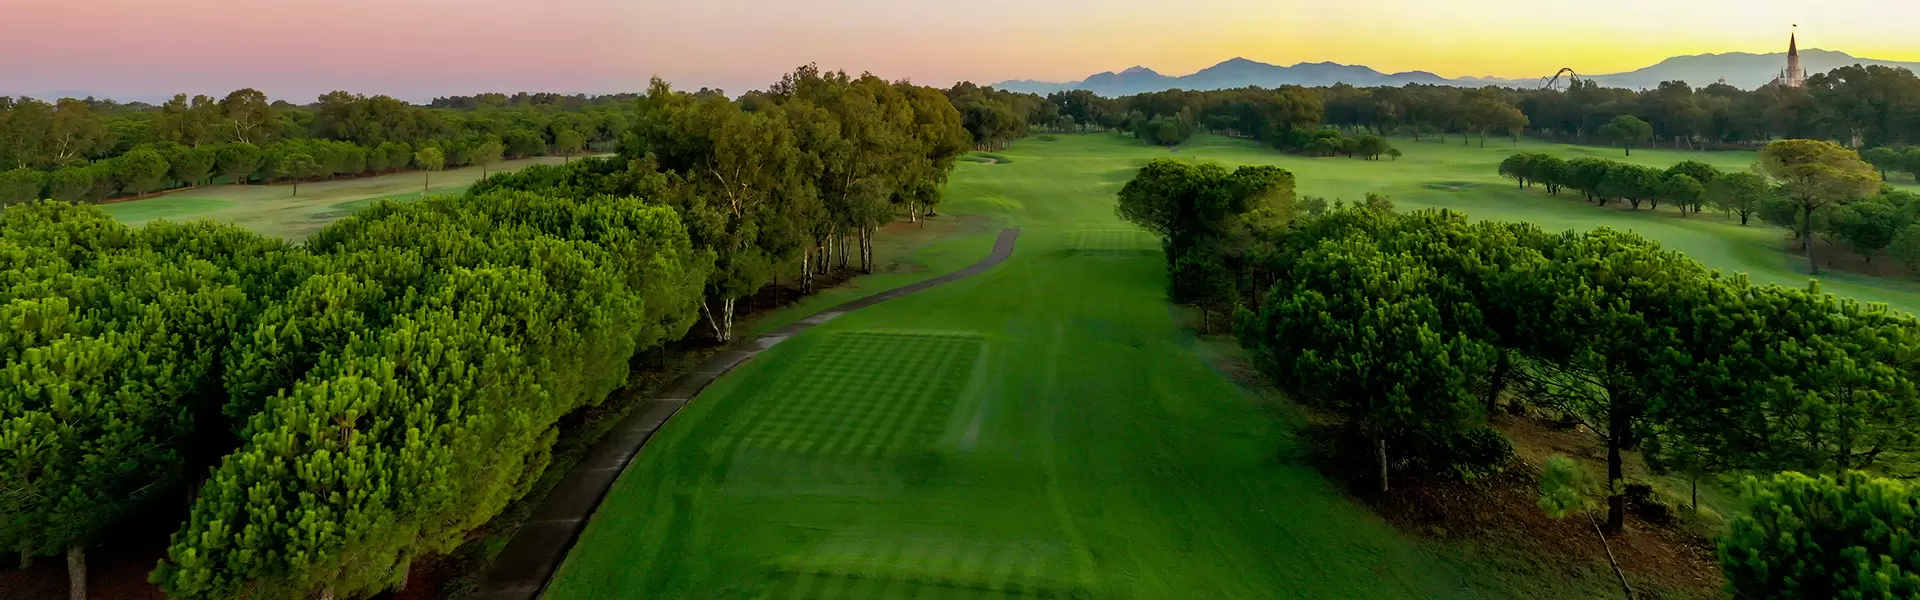 Antalya Golf Club: PGA Sultan